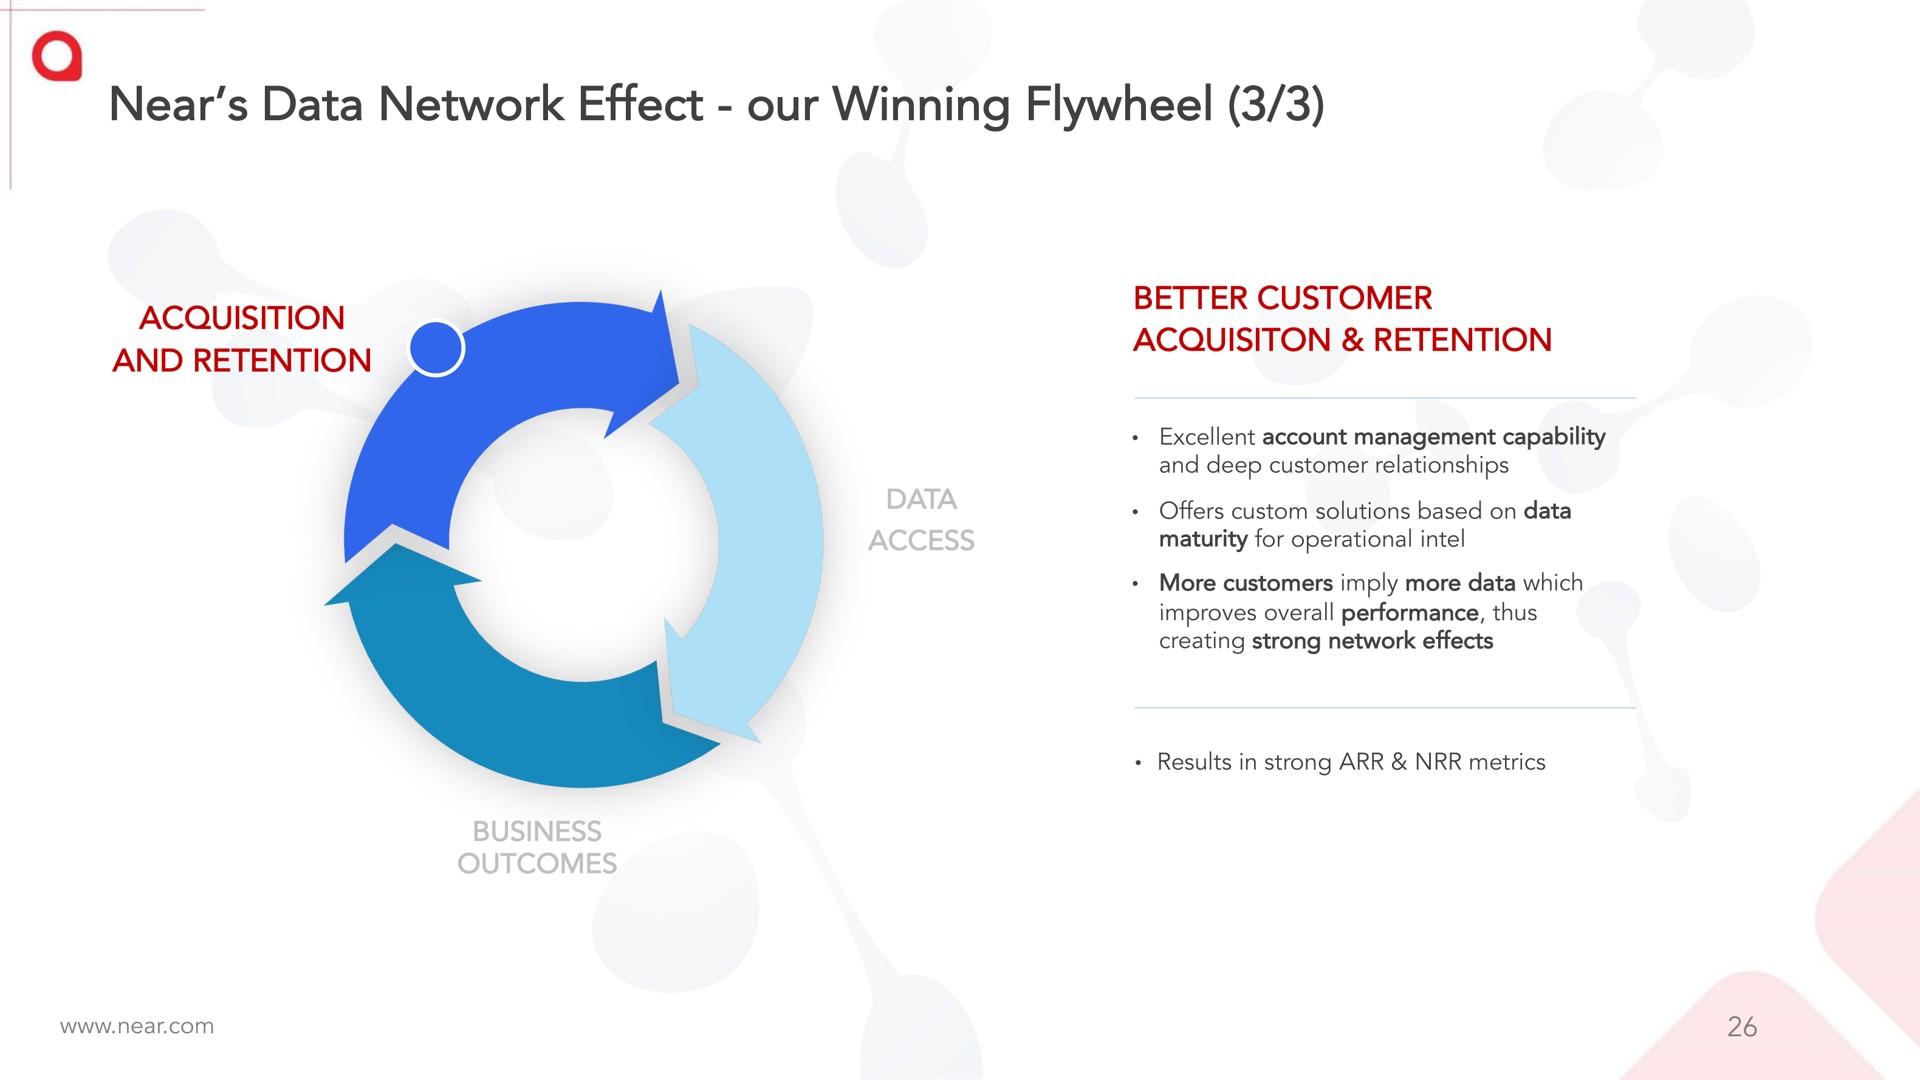 near data network effect our winning flywheel | Near